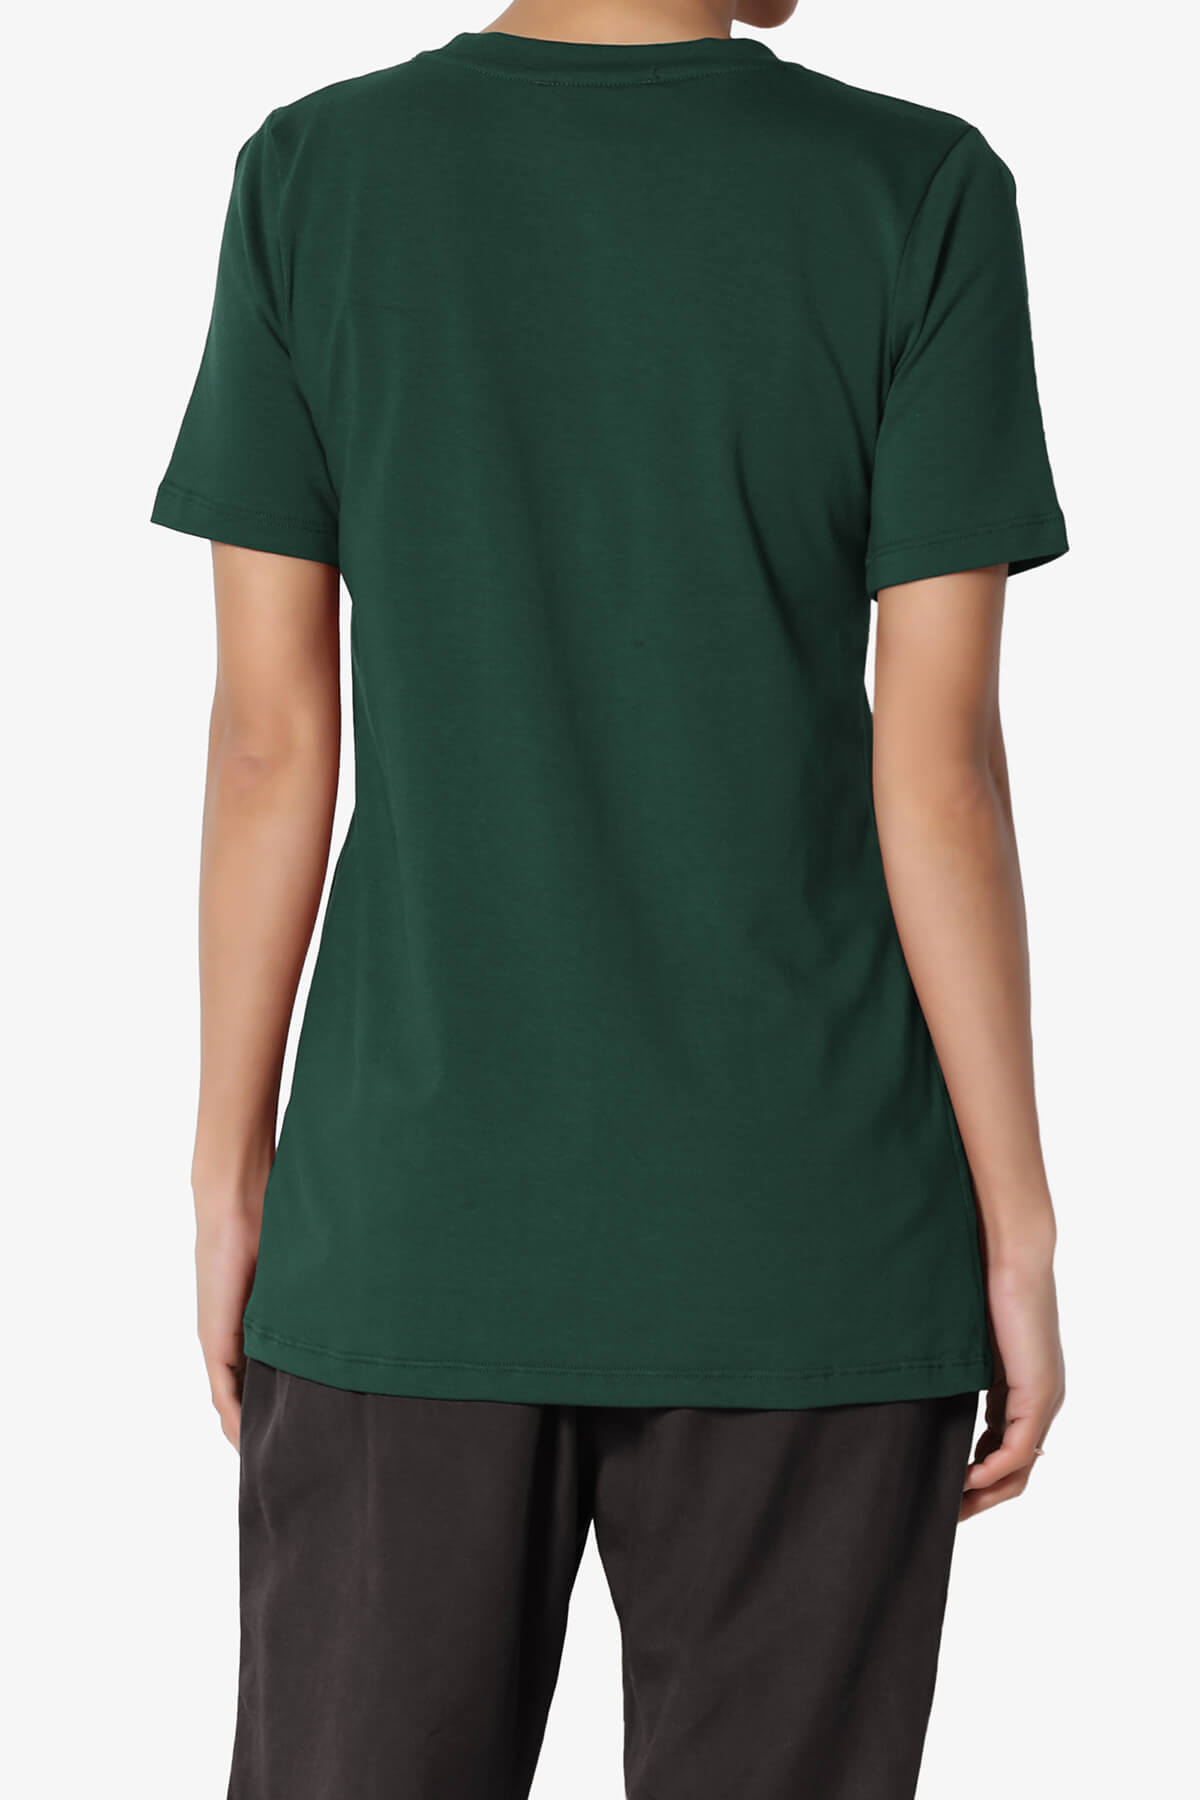 Elora Crew Neck Short Sleeve T-Shirt HUNTER GREEN_2